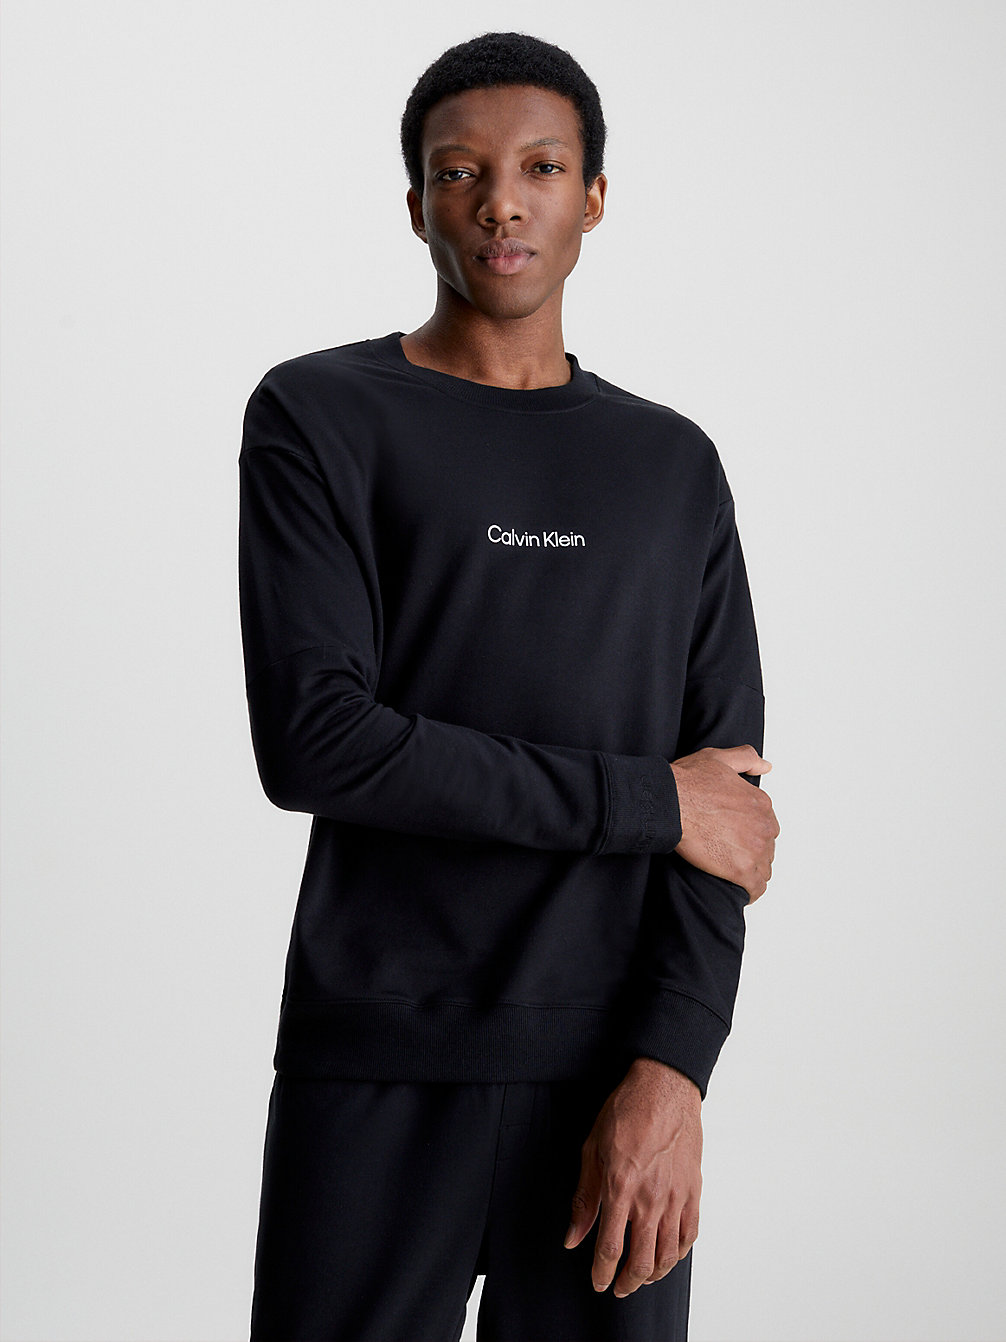 BLACK > Lounge-Sweatshirt – Modern Structure > undefined Herren - Calvin Klein